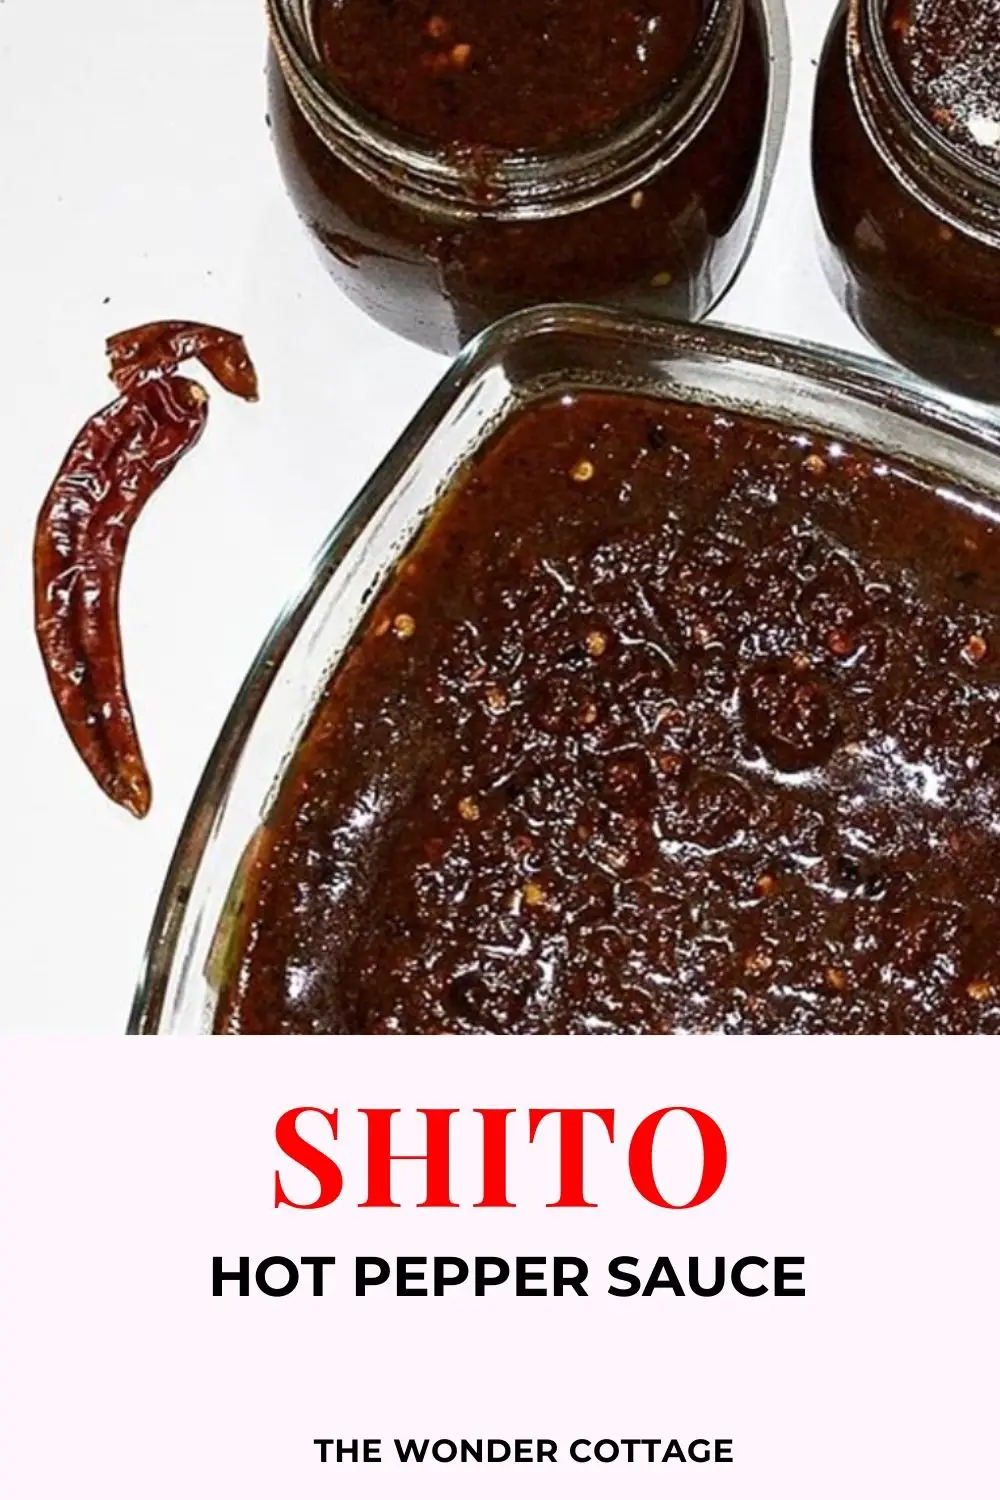 shito - hot pepper sauce recipe